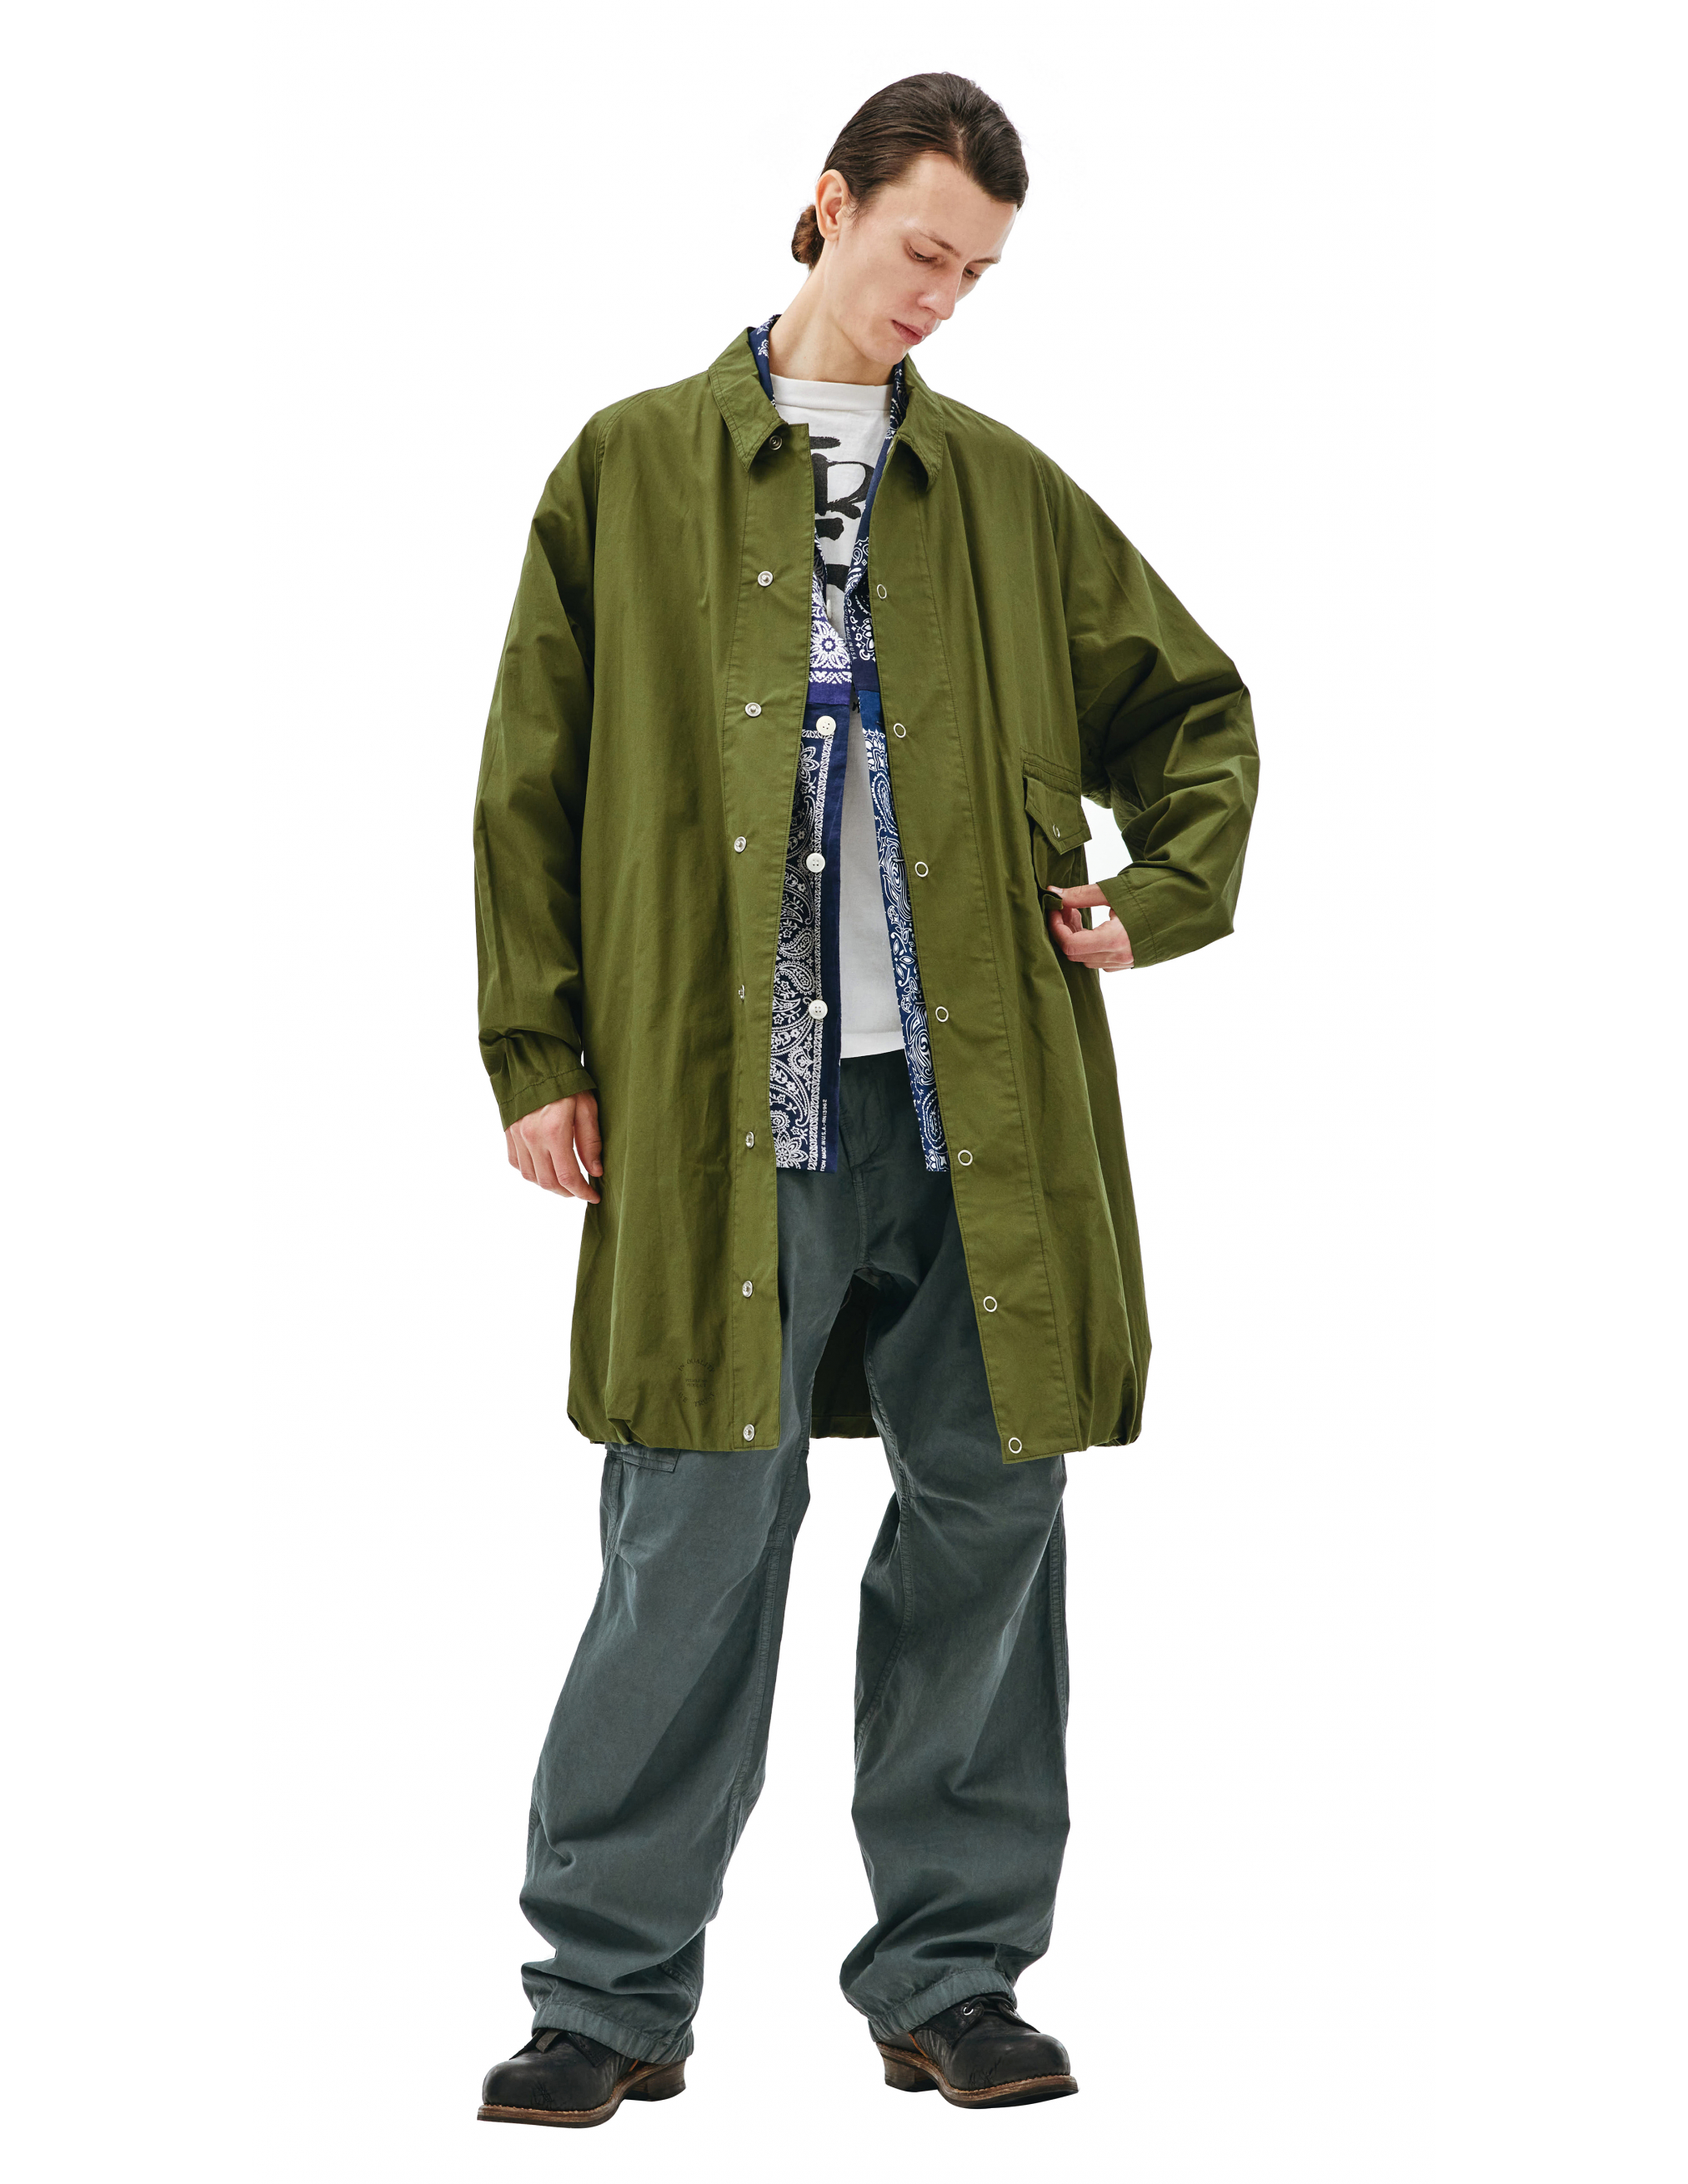 Пальто из хлопка с накладным карманом - Visvim 0121205013027/olive Фото 3